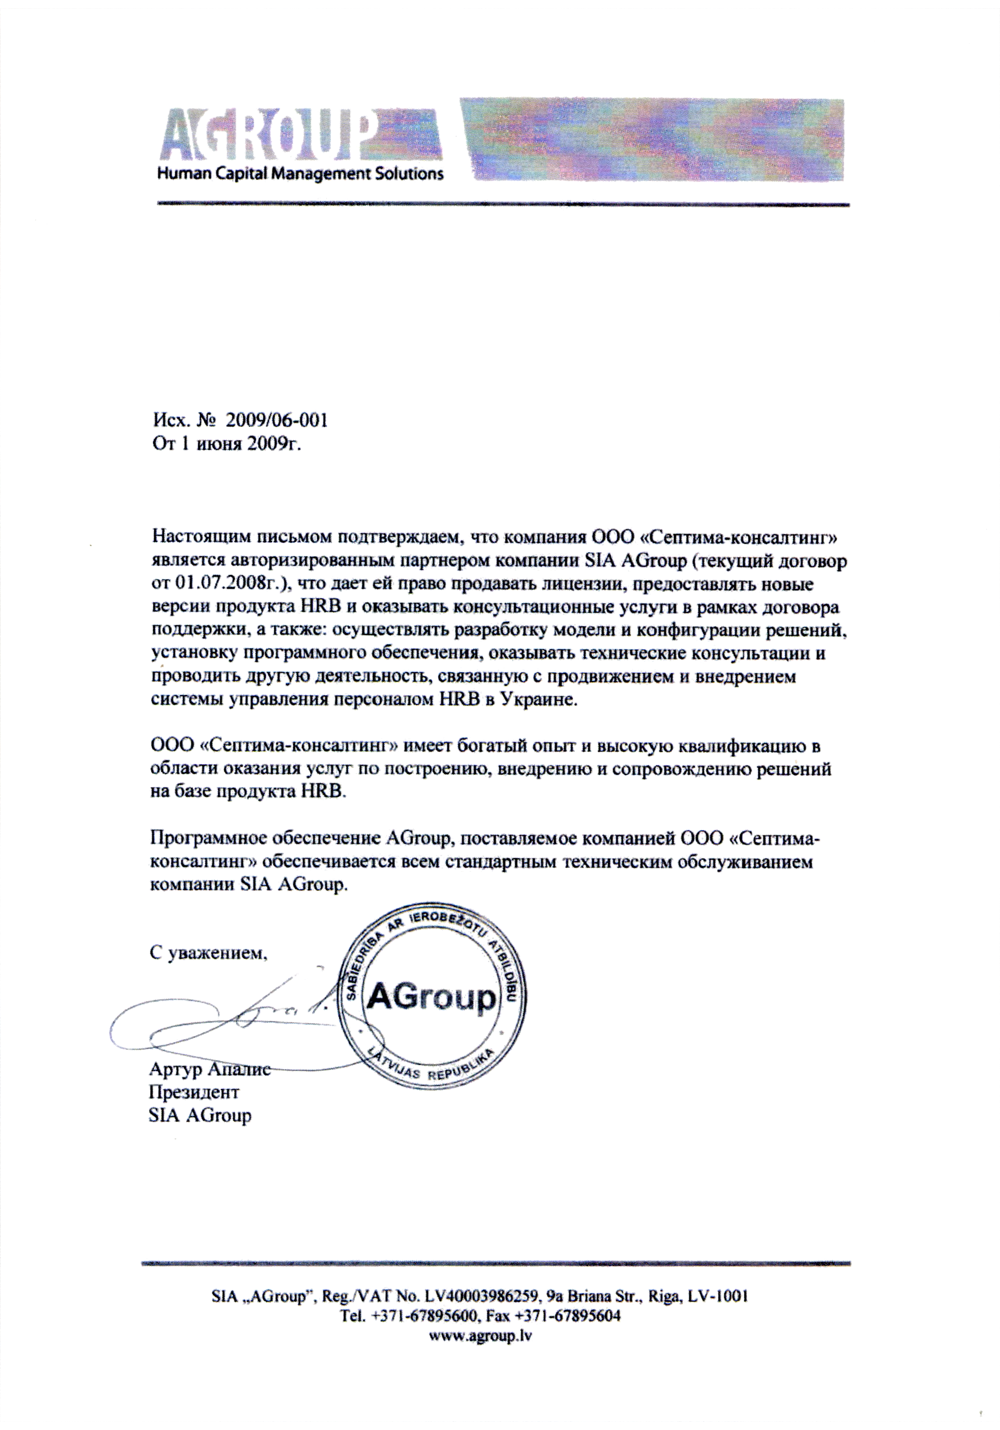 Рекомендательно письмо SIA AGroup, Июнь, 2009 г.